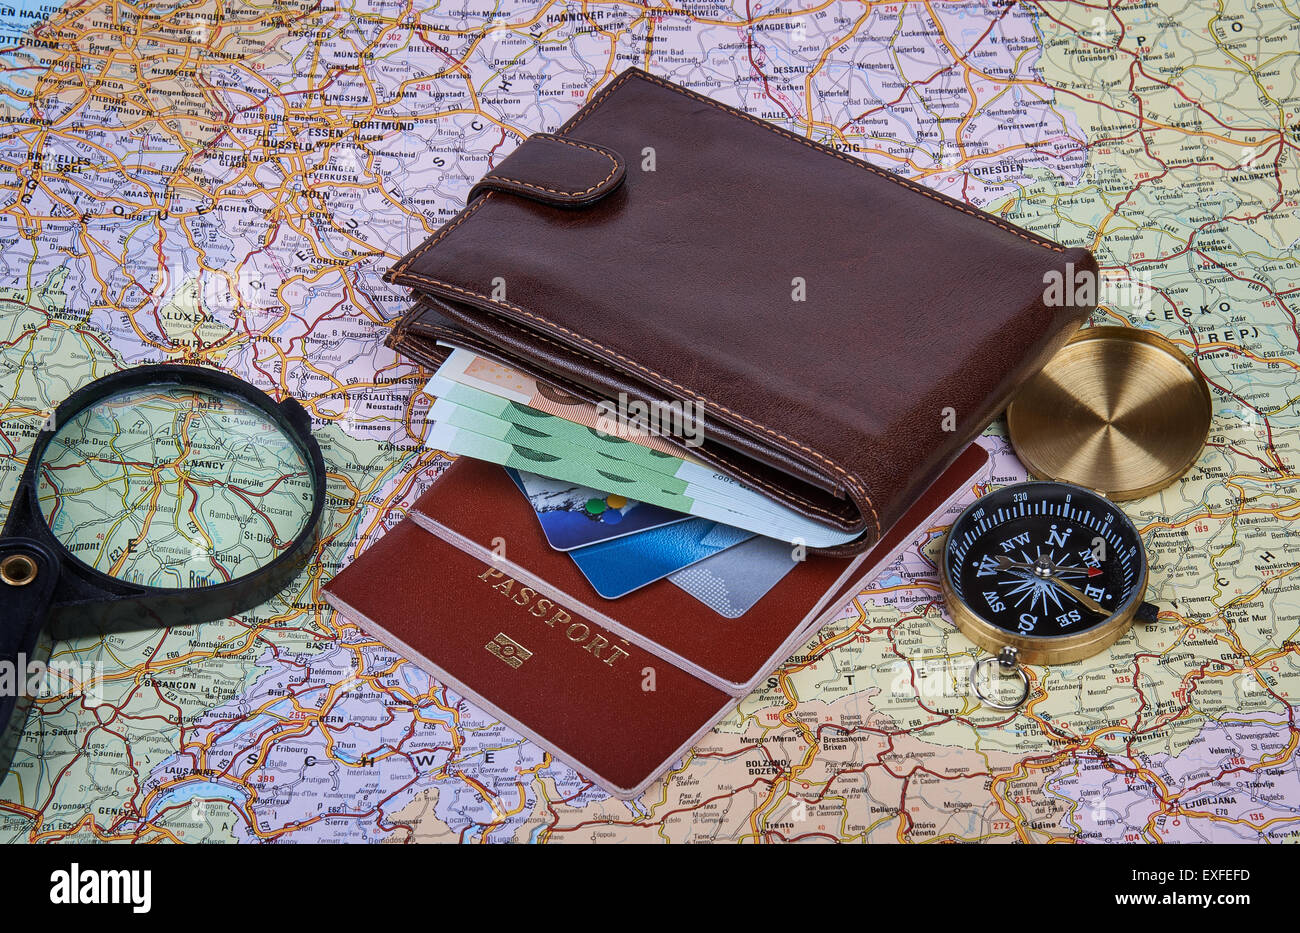 accesorios de viajero con pasaporte, libros de plan de viaje, billetera,  cámara, teléfono móvil, mochila y